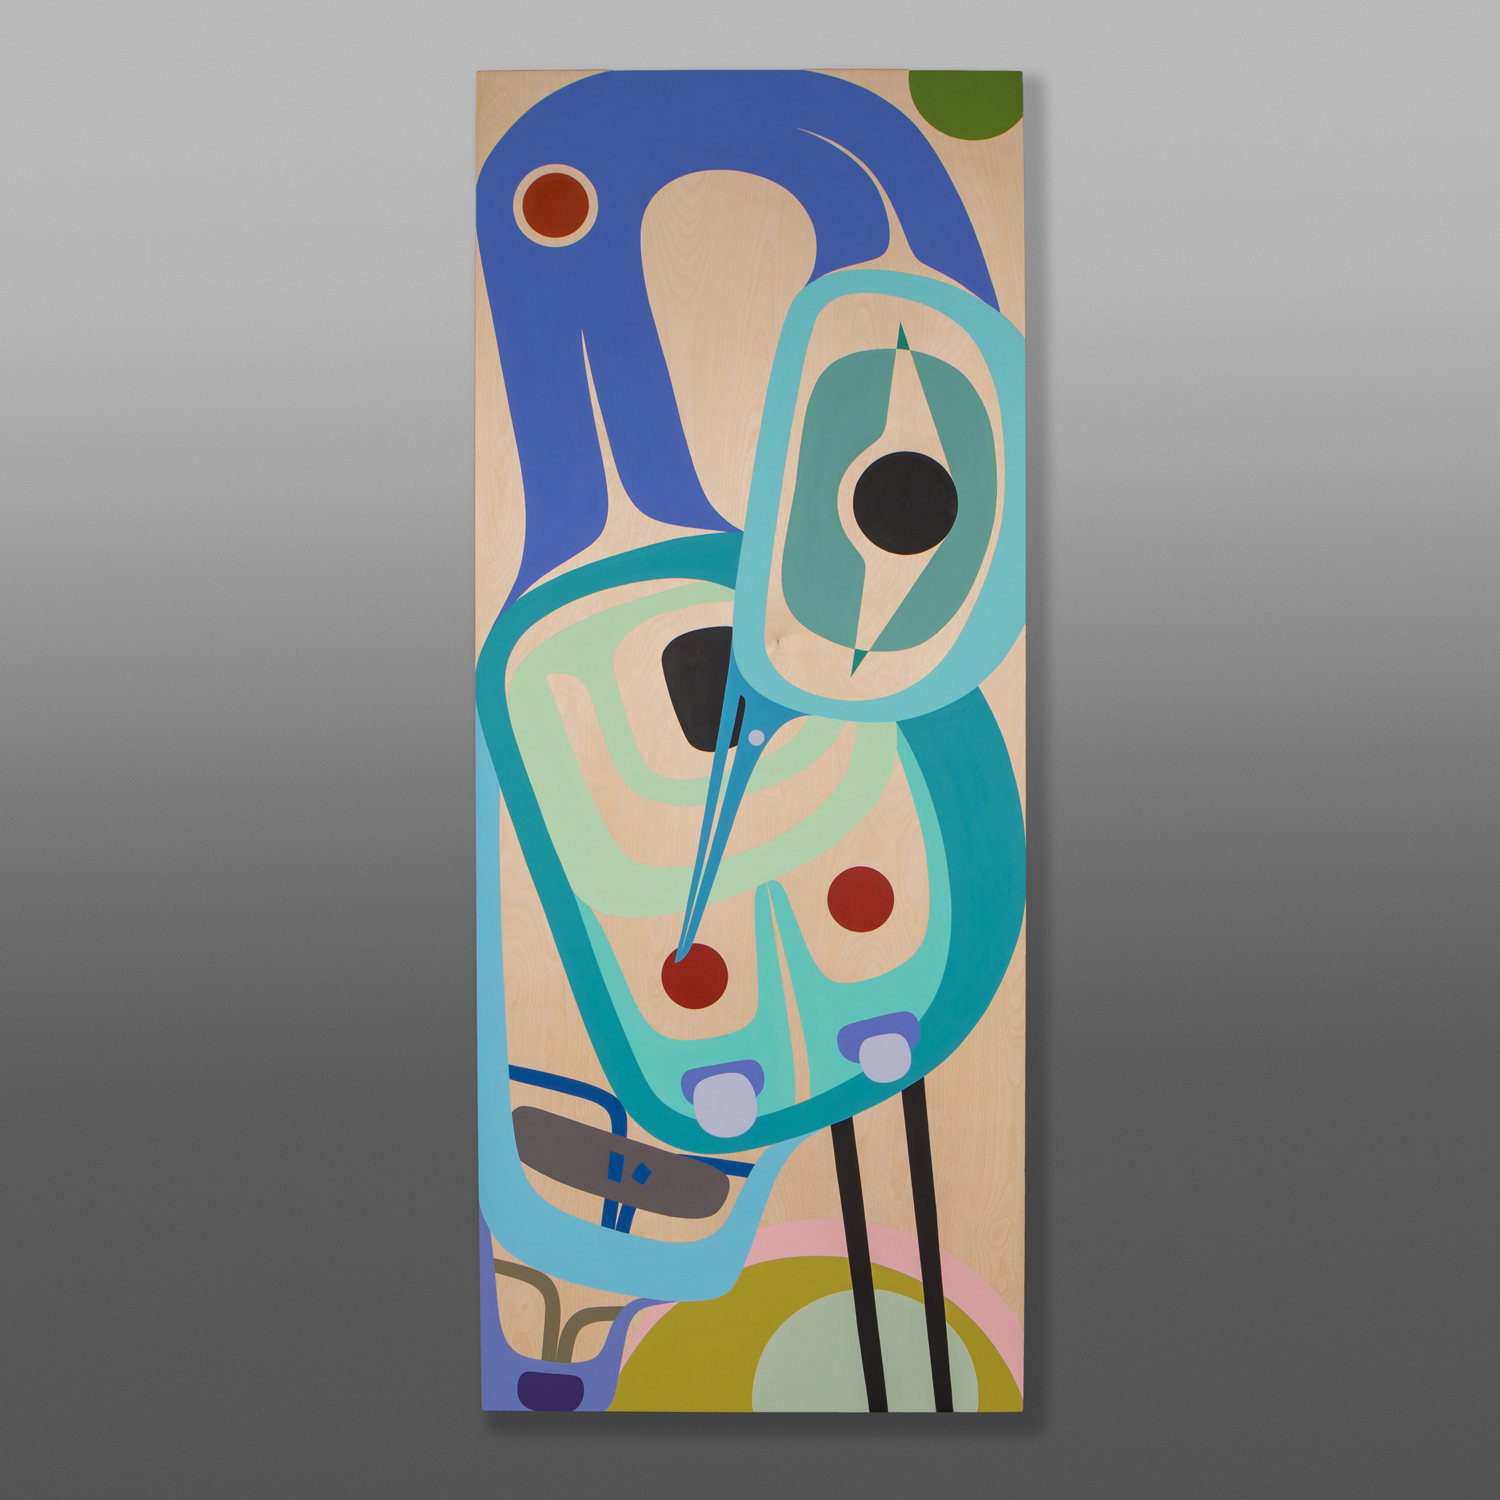 Tranquility
Steve Smith – Dla-kwagila
Oweeneno
24”x60”
Acrylic on birch panel
$6500
